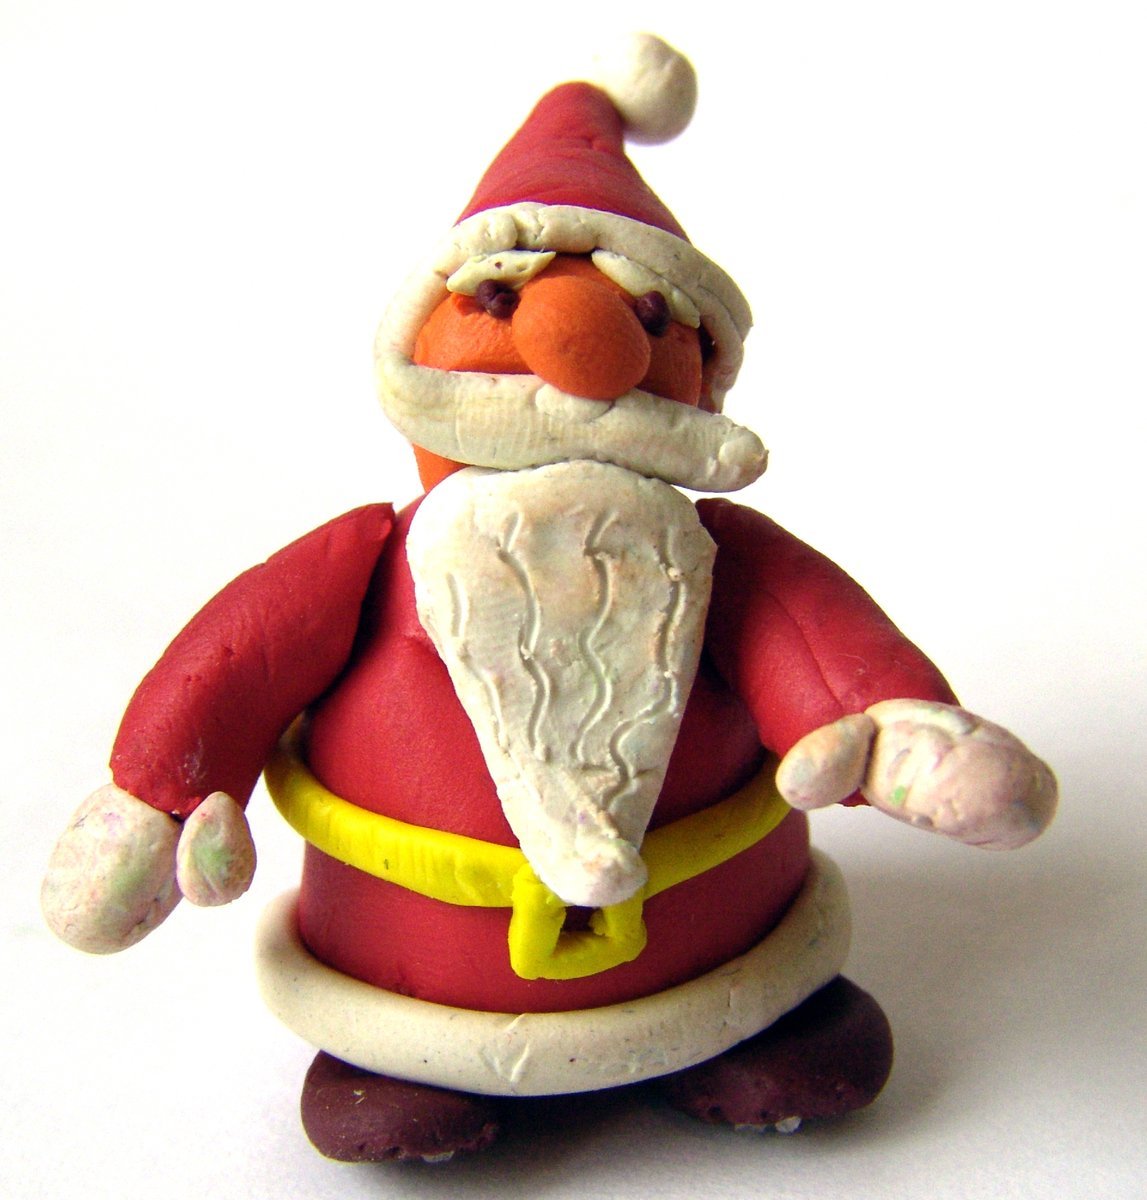 Дедушка из пластилина. Дед Мороз изпластелина. Лепка дед Мороз. Слепить Деда Мороза из пластилина. Фигура Деда Мороза из пластилина.